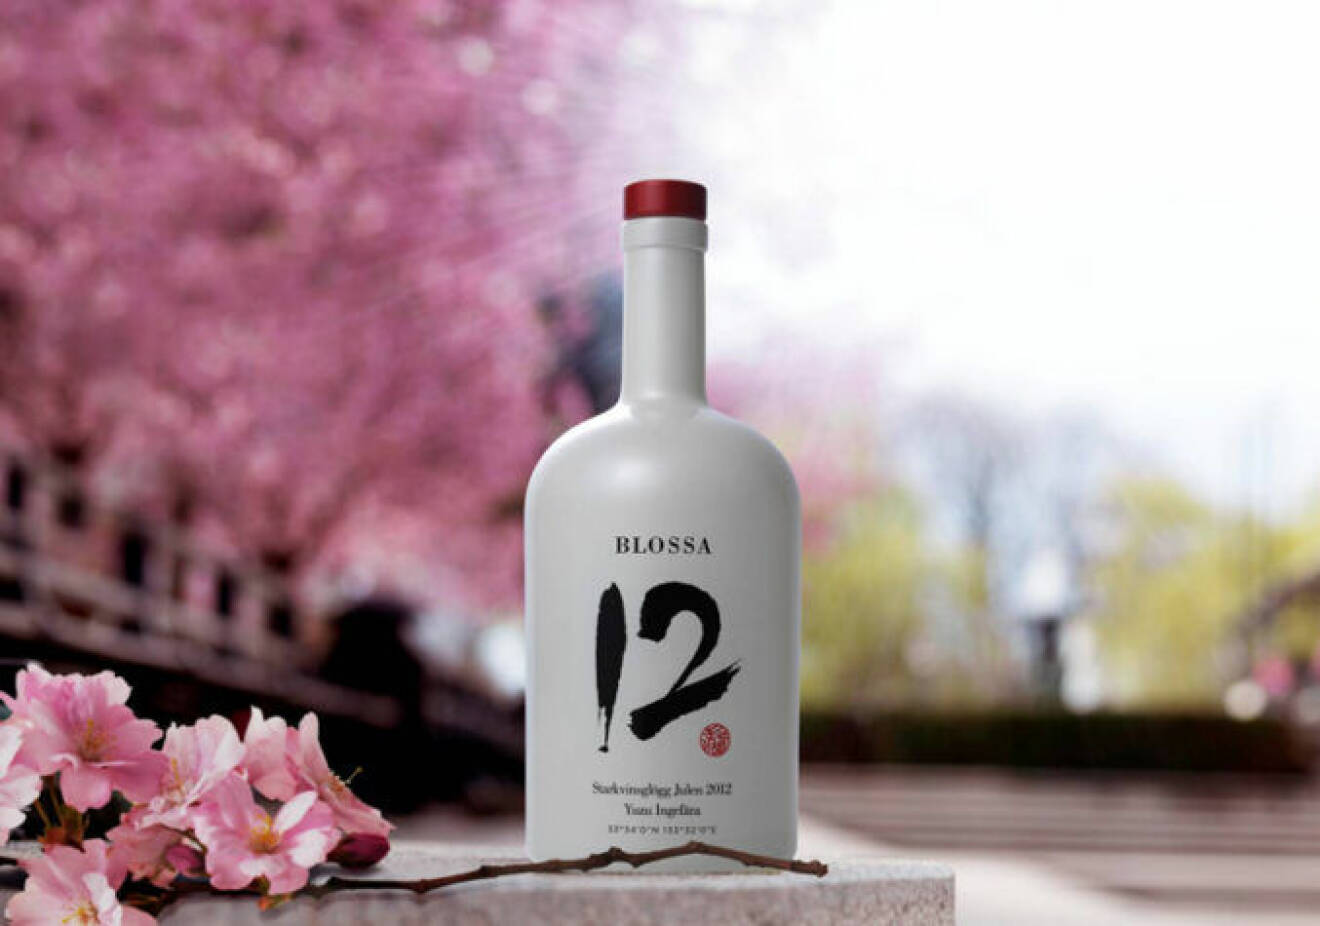 En flaska av Blossas årgångsglögg från år 2012, med smak av yuzu och ingefära.